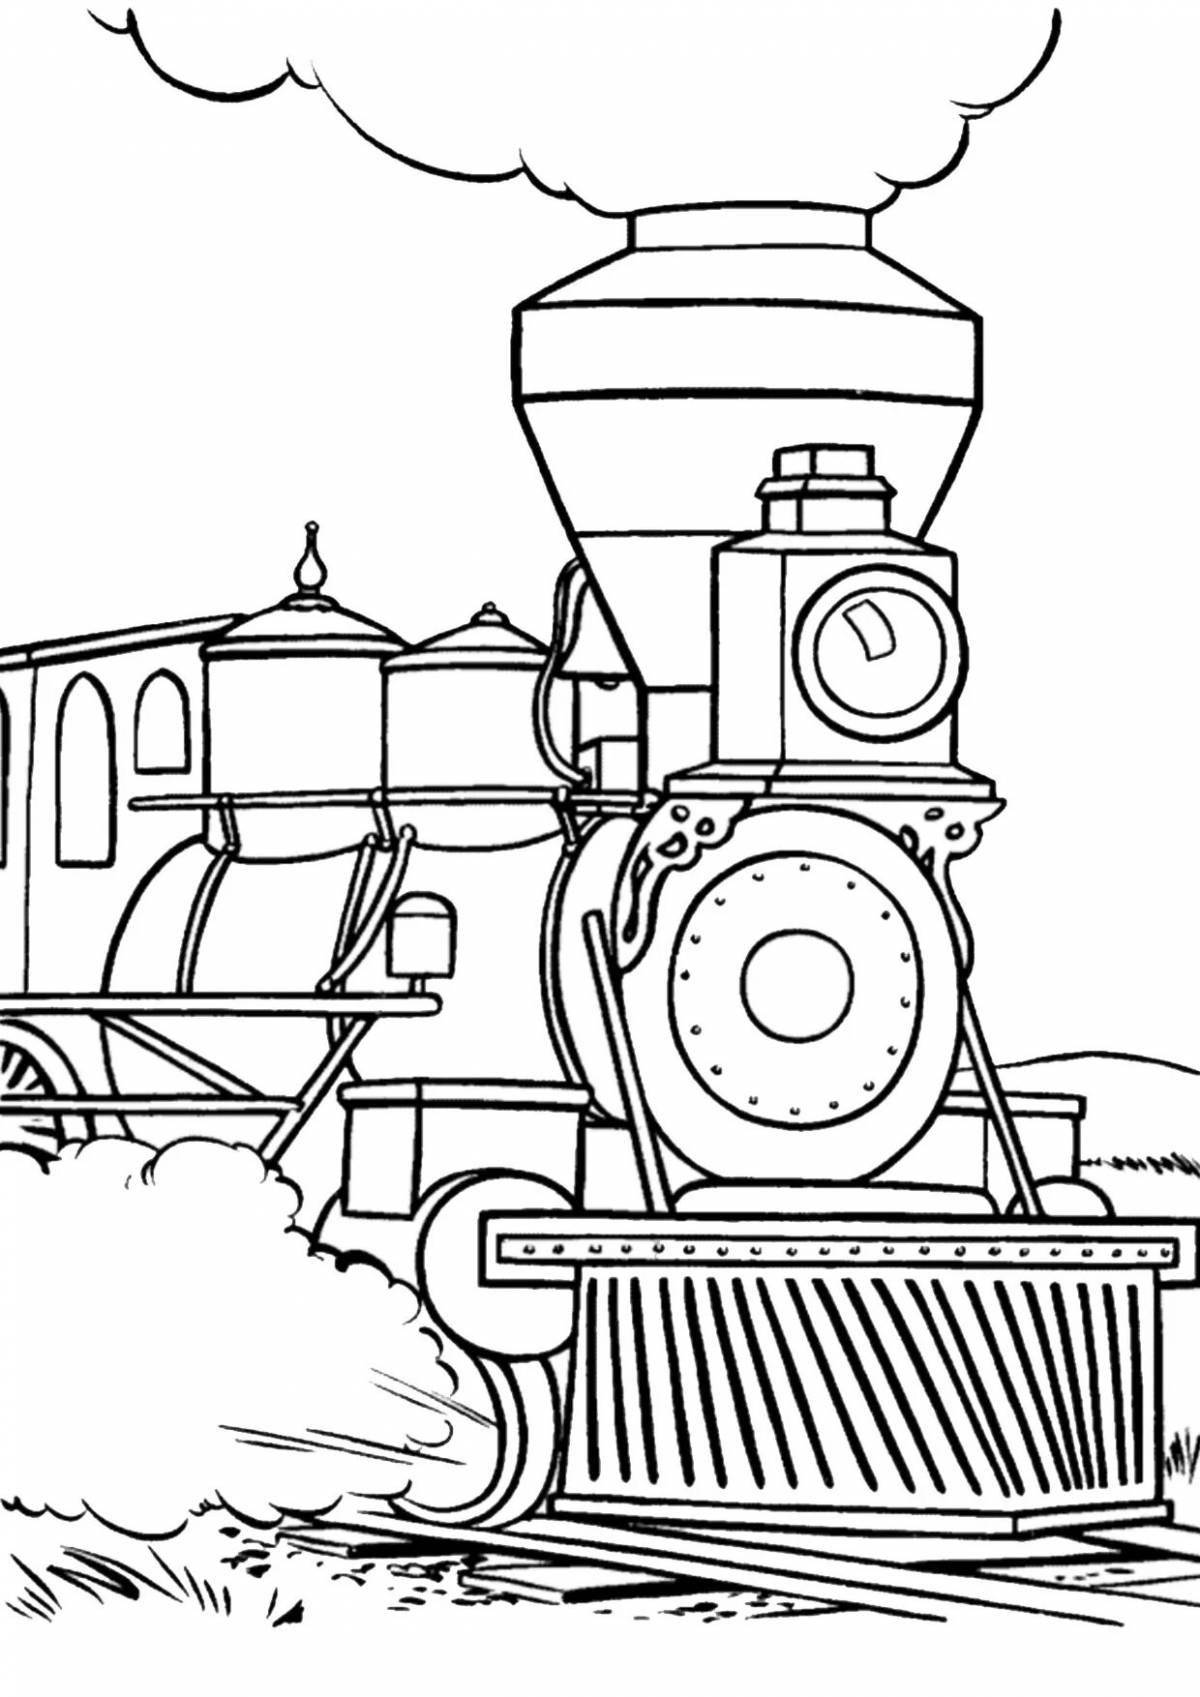 Креативный рисунок поезда